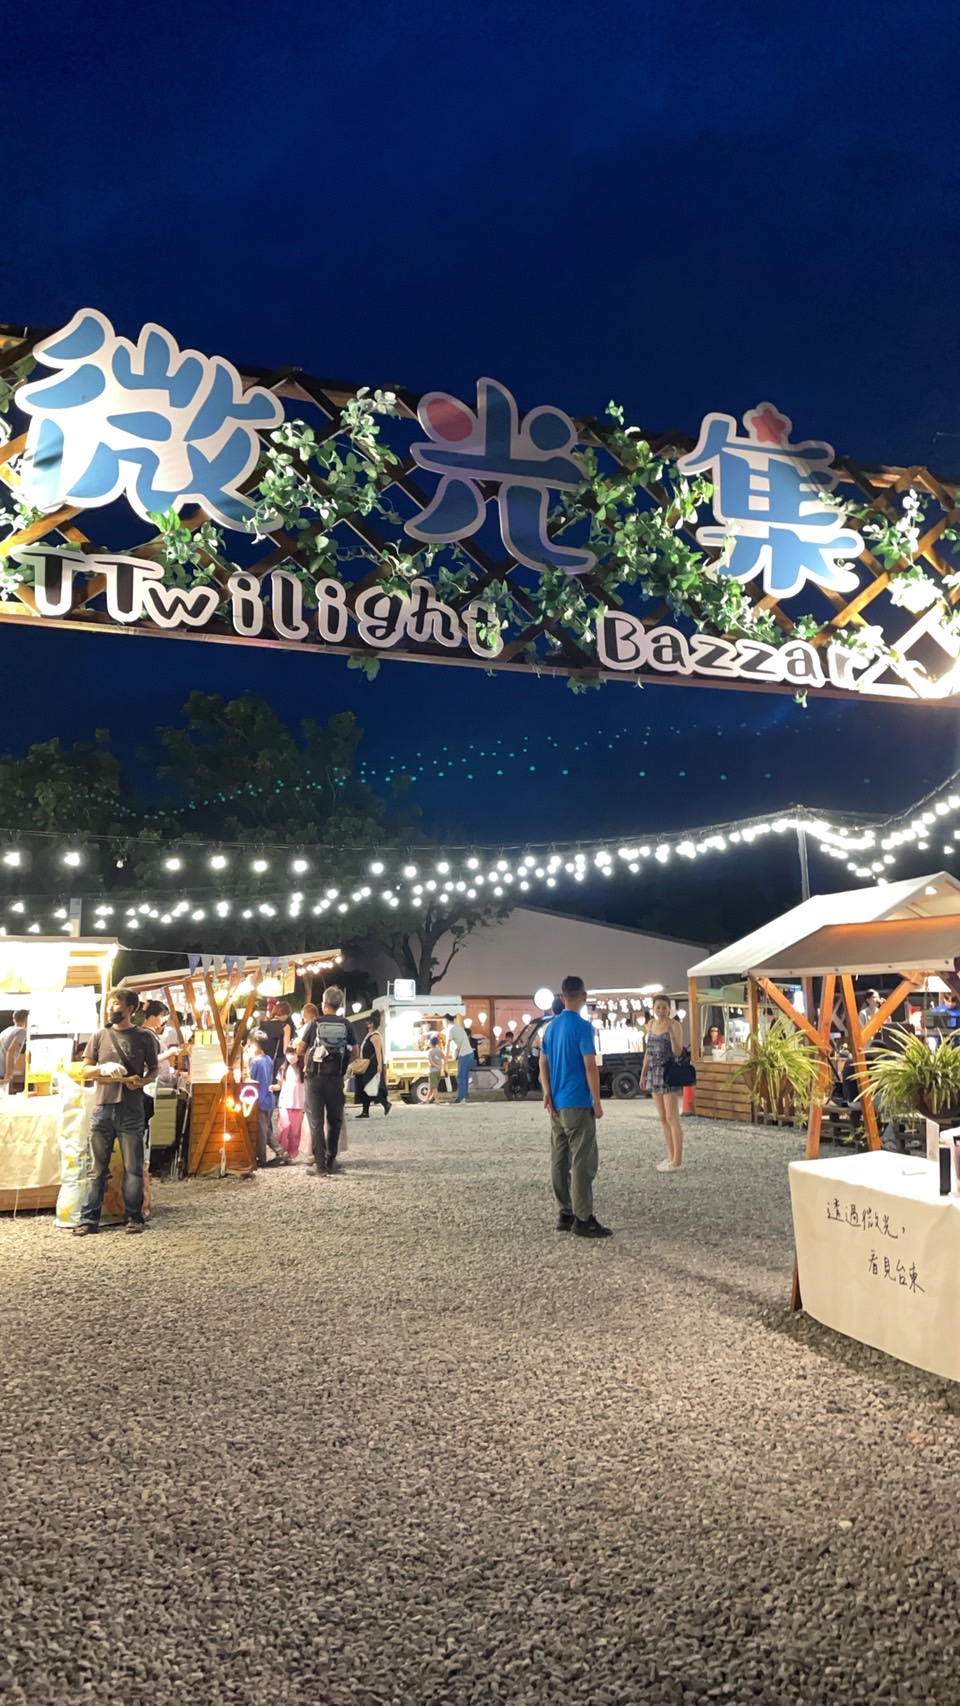 台 東 的 鐵 花 村 辦 得 很 成 功 ， 許 多 的 美 食 、 音 樂 表 演 也 是 讓 人 回 味 無 窮 ， 值 得 引 進 基 隆 等 旅 遊 城 市 ！ 